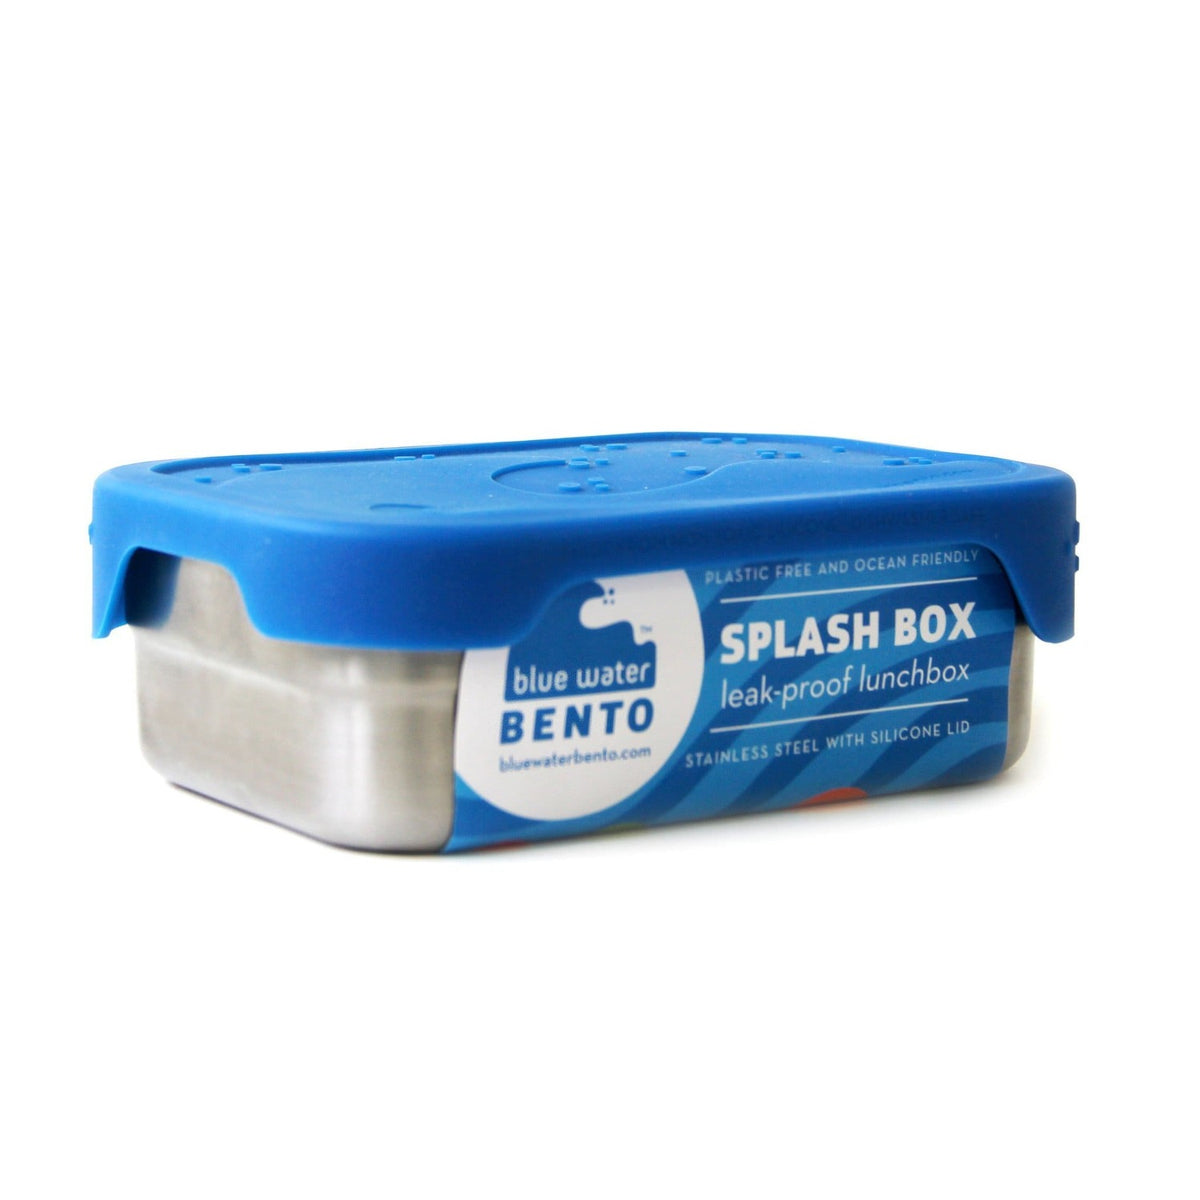 http://ecolunchboxes.com/cdn/shop/products/blue-water-bento-lunchbox-splash-box-28801269301361_1200x.jpg?v=1684204964